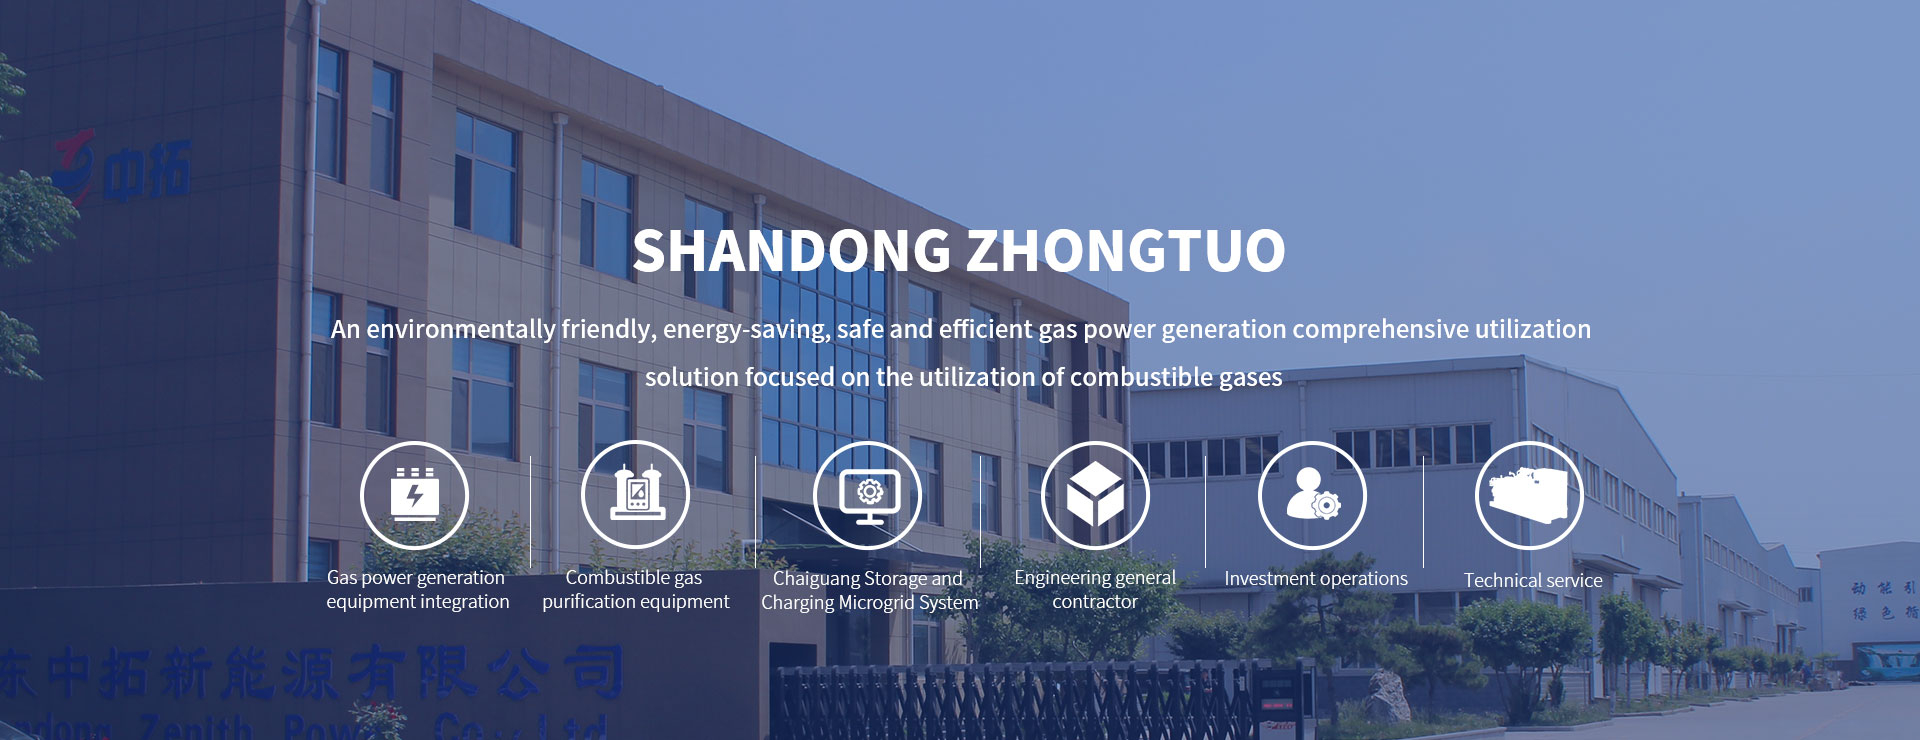 Shandong Zhongtuo